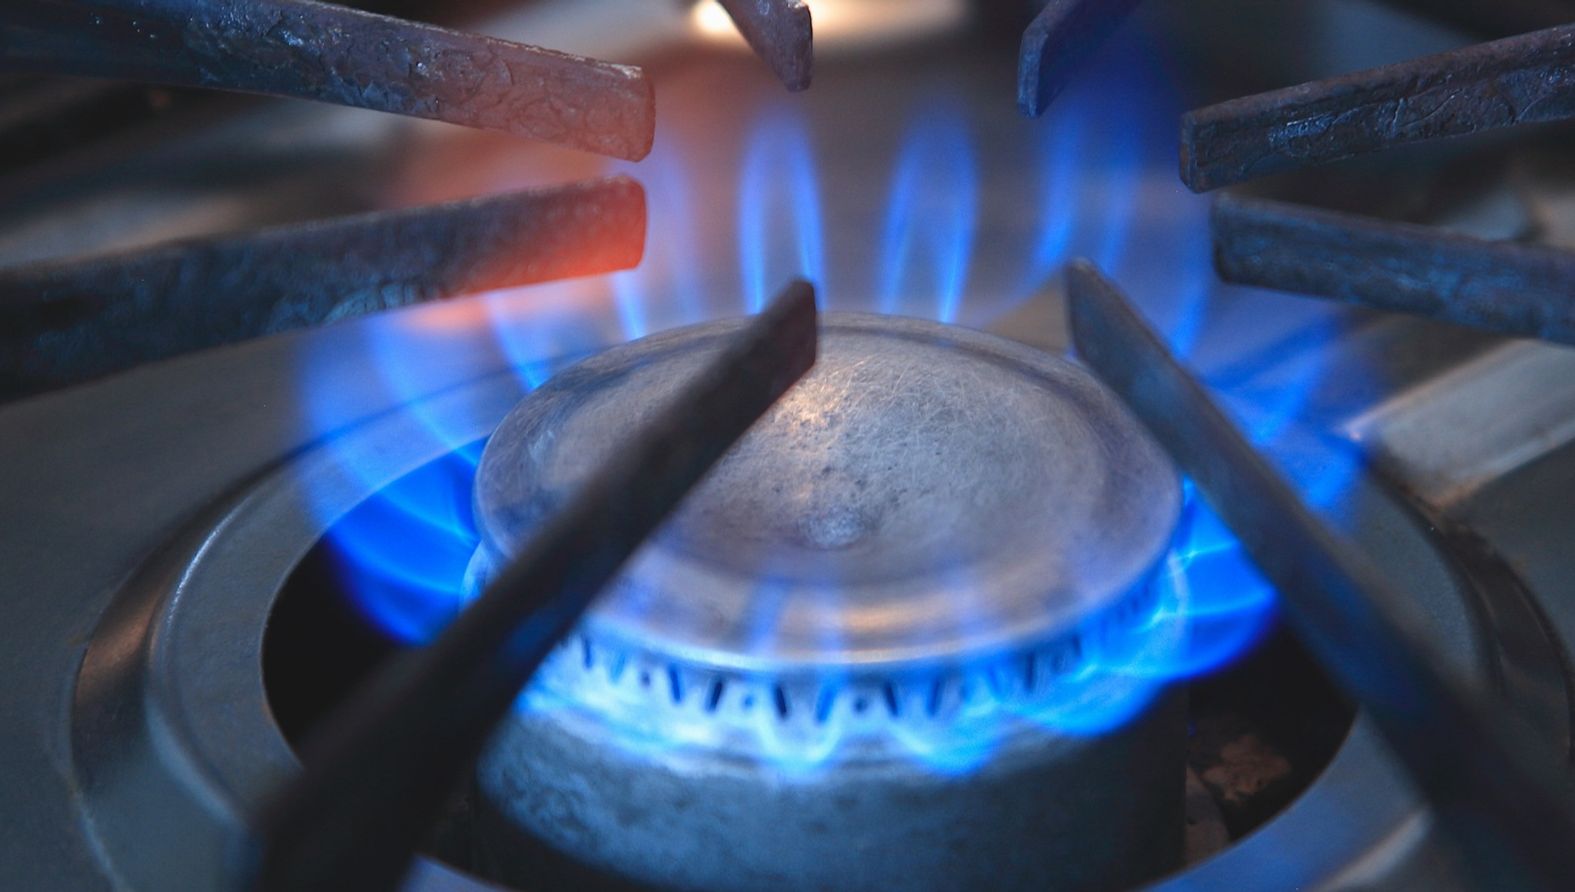 Webinar “Le norme tecniche per gli impianti a gas” 2 ottobre 2020 10:30-12:30